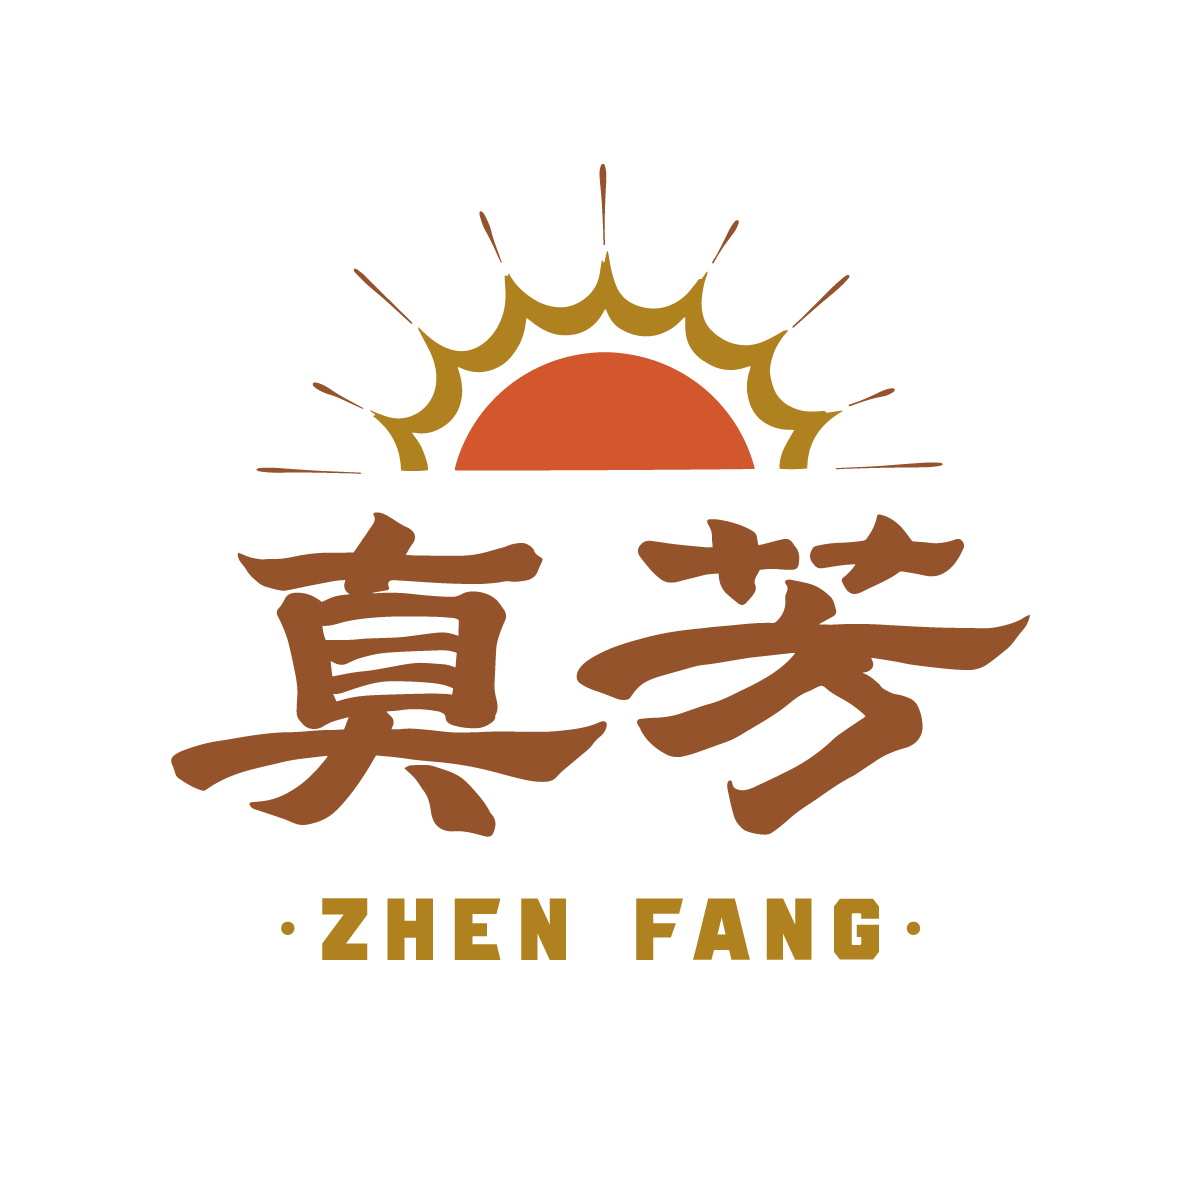 zhenfang